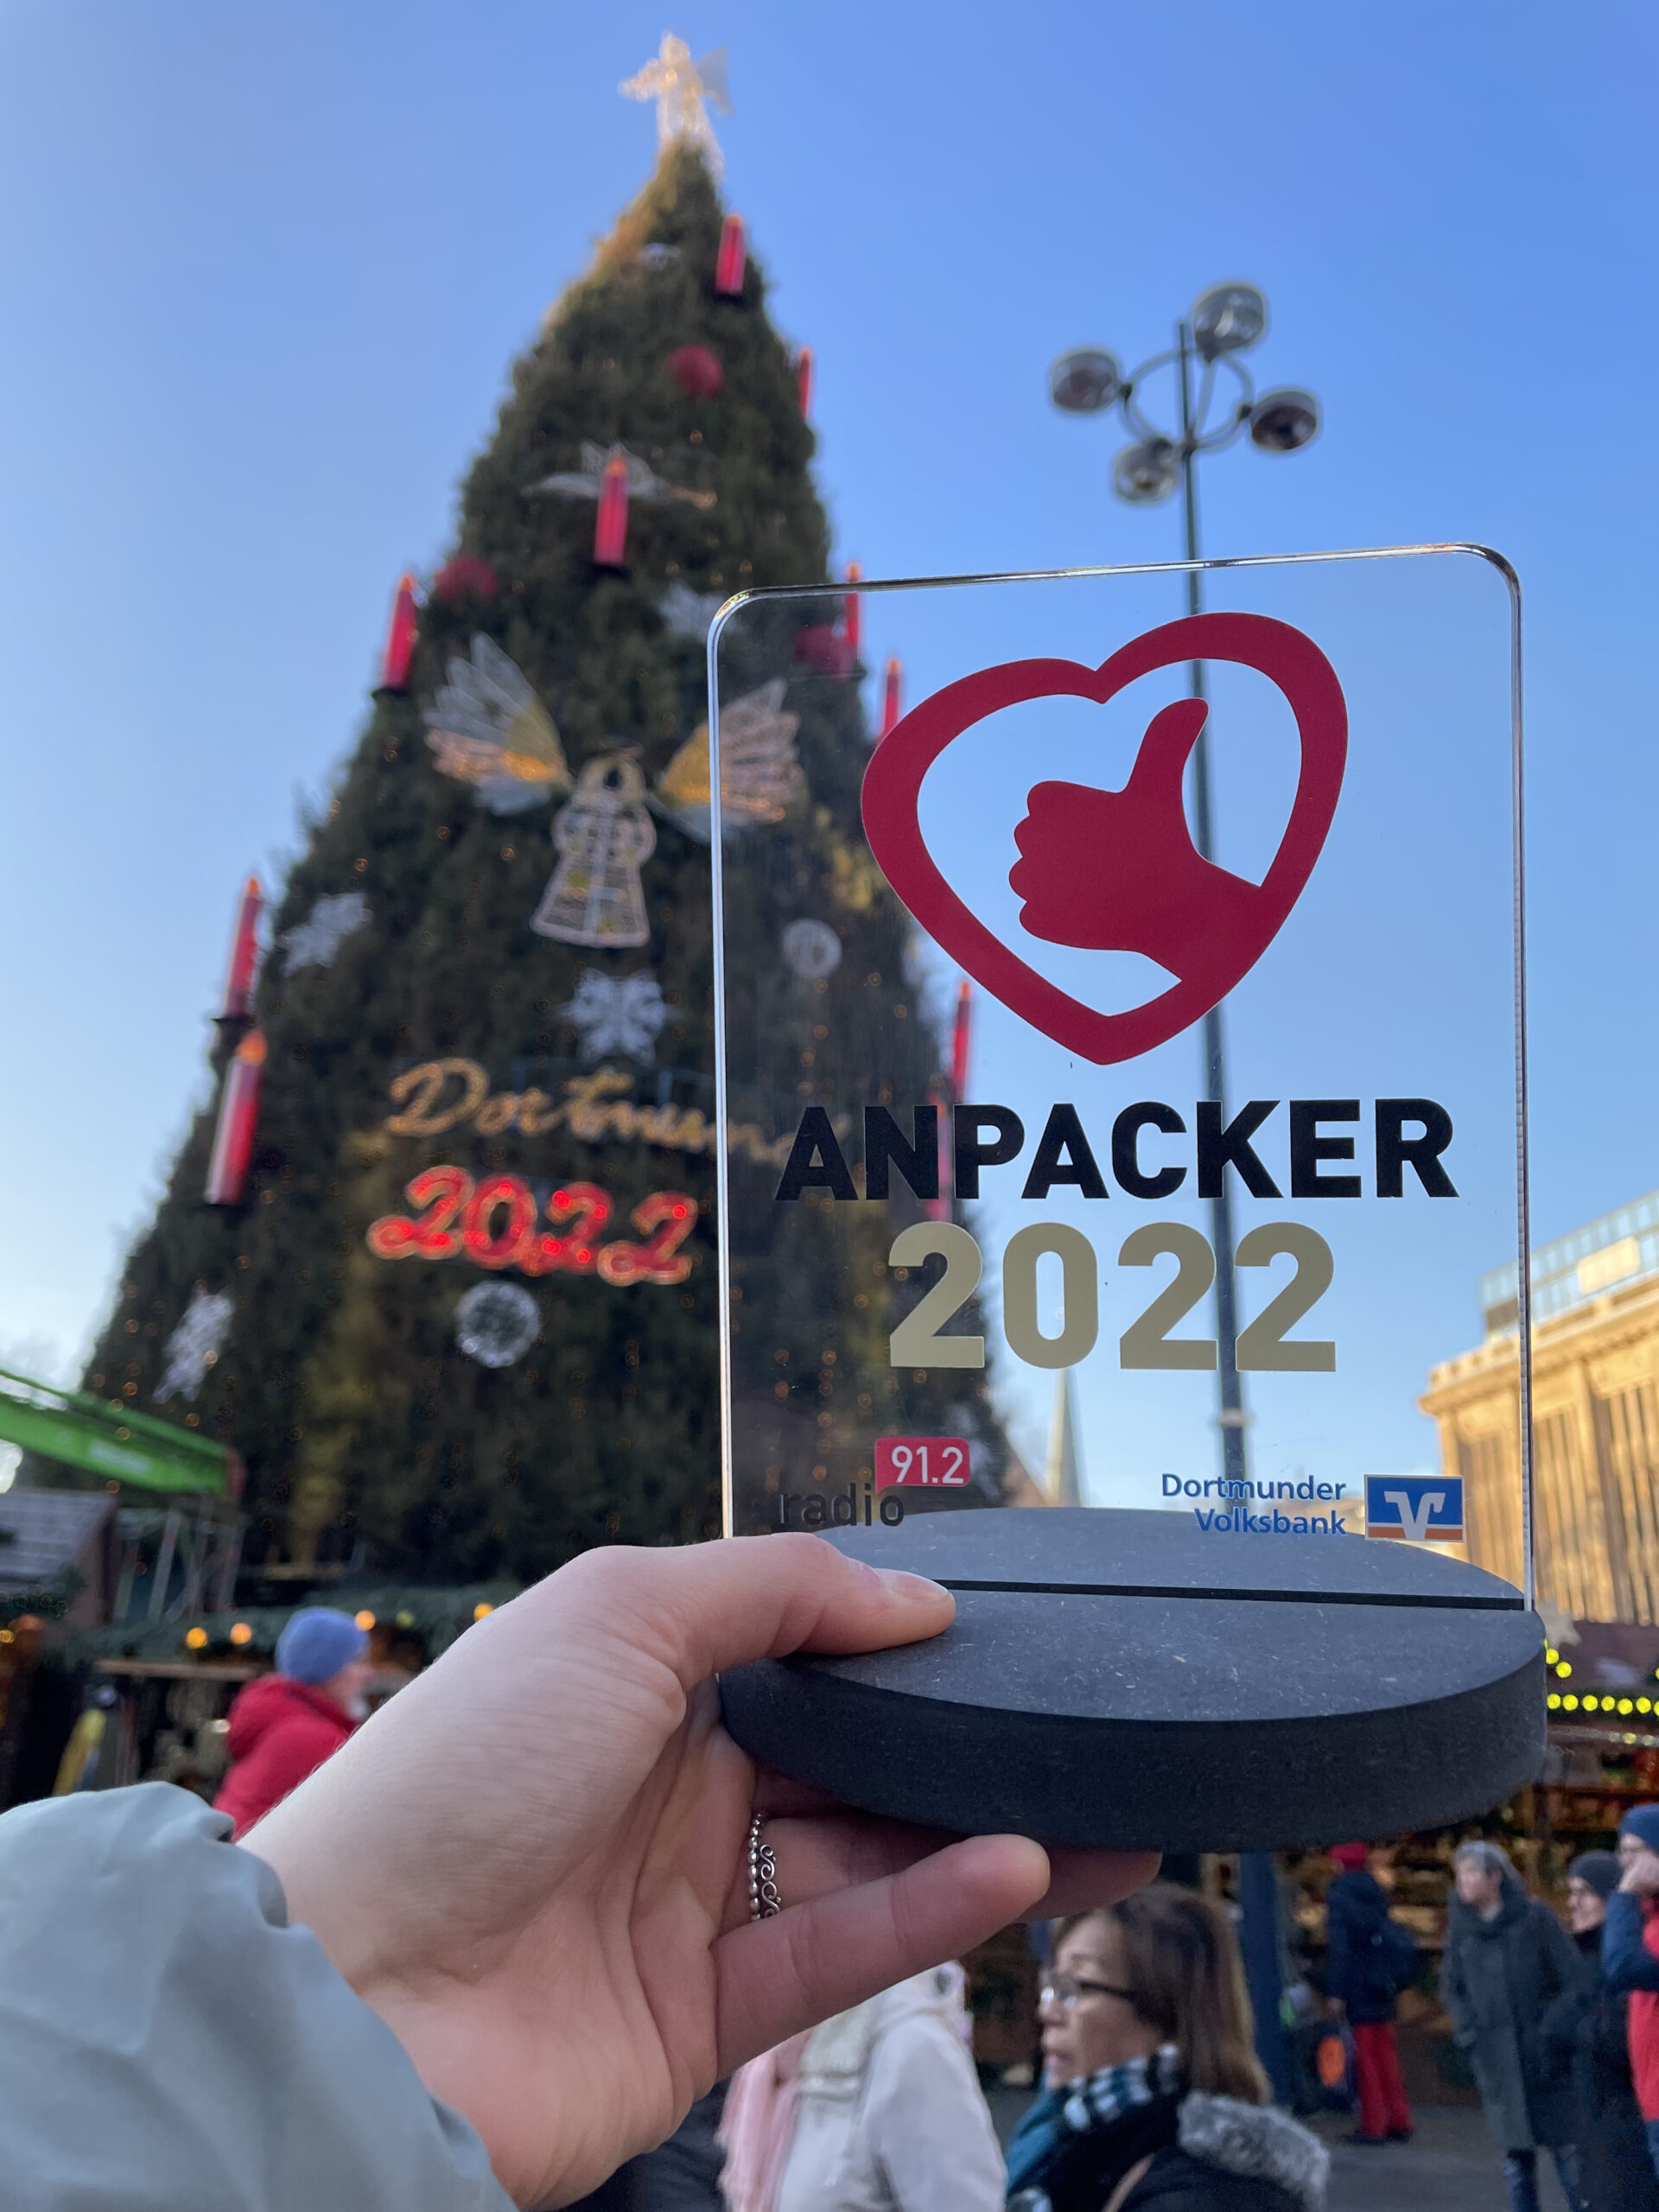 Preis Anpacker des Jahres 2022 vor Weihnachtsbaum